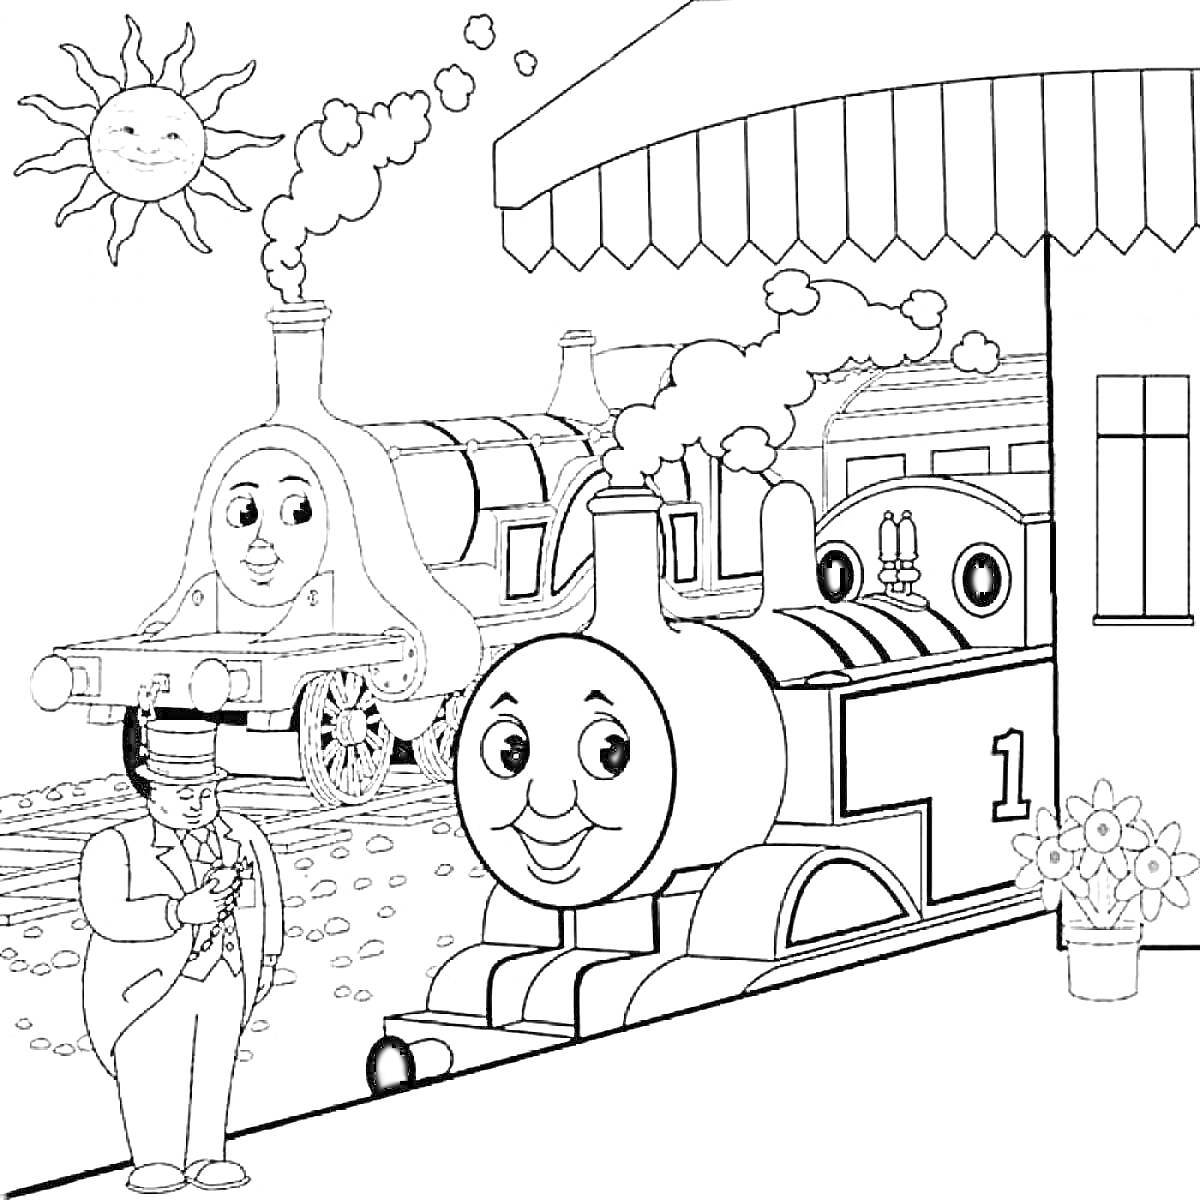 Паровозик Томас, двое паровозиков на станции, солнце, начальник станции, цветы